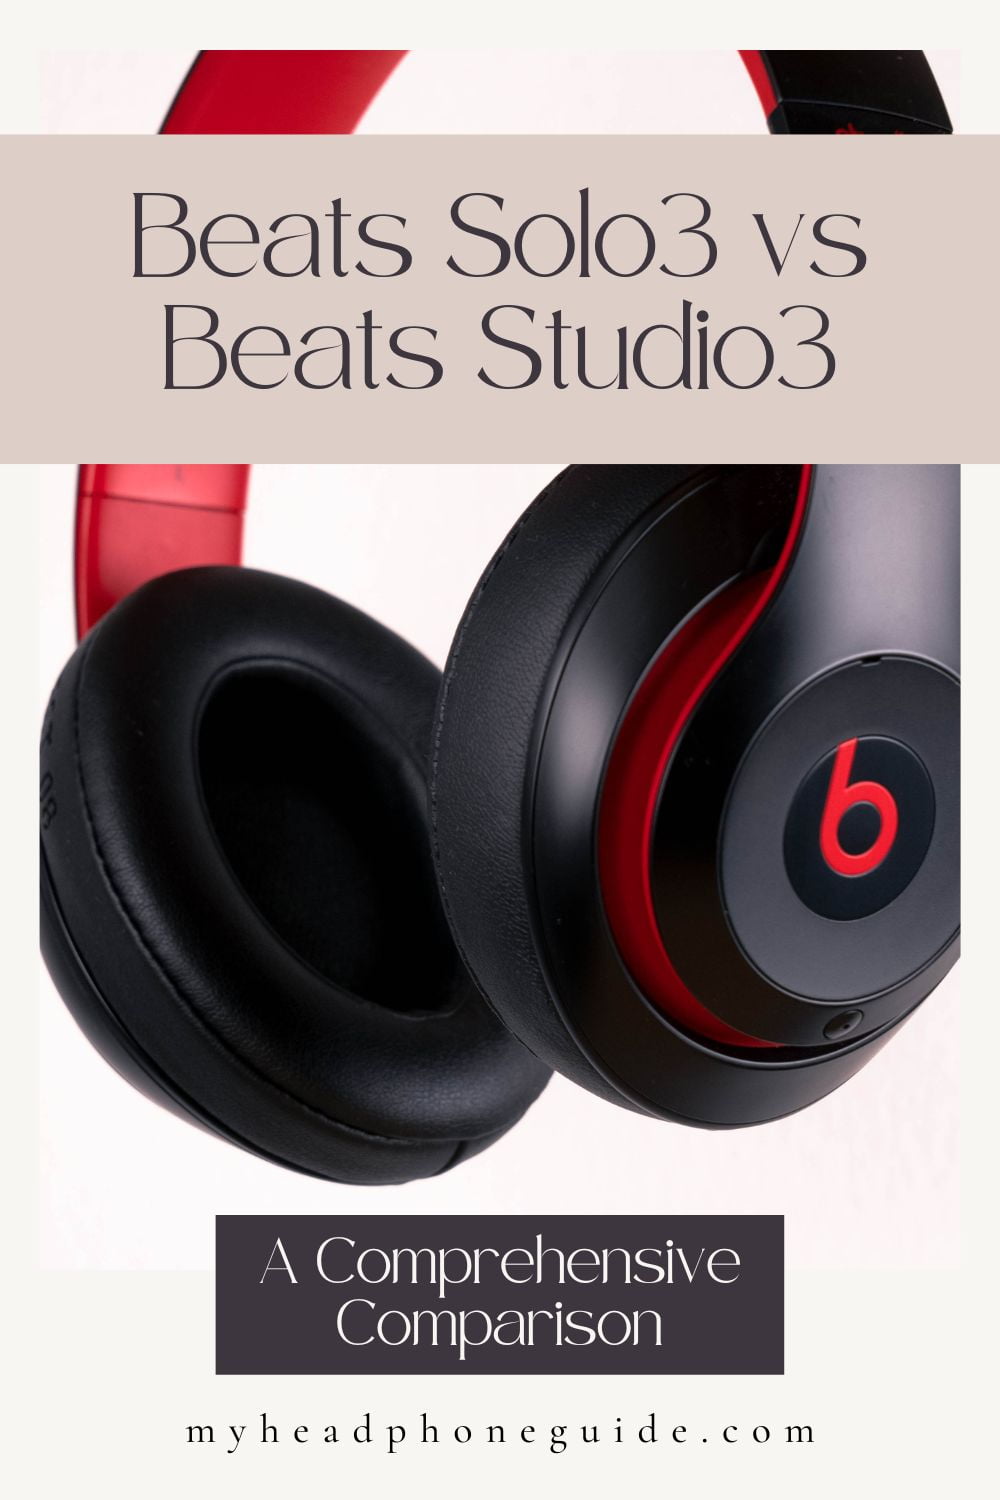 Beats Solo3 vs Beats Studio3: A Comprehensive Comparison